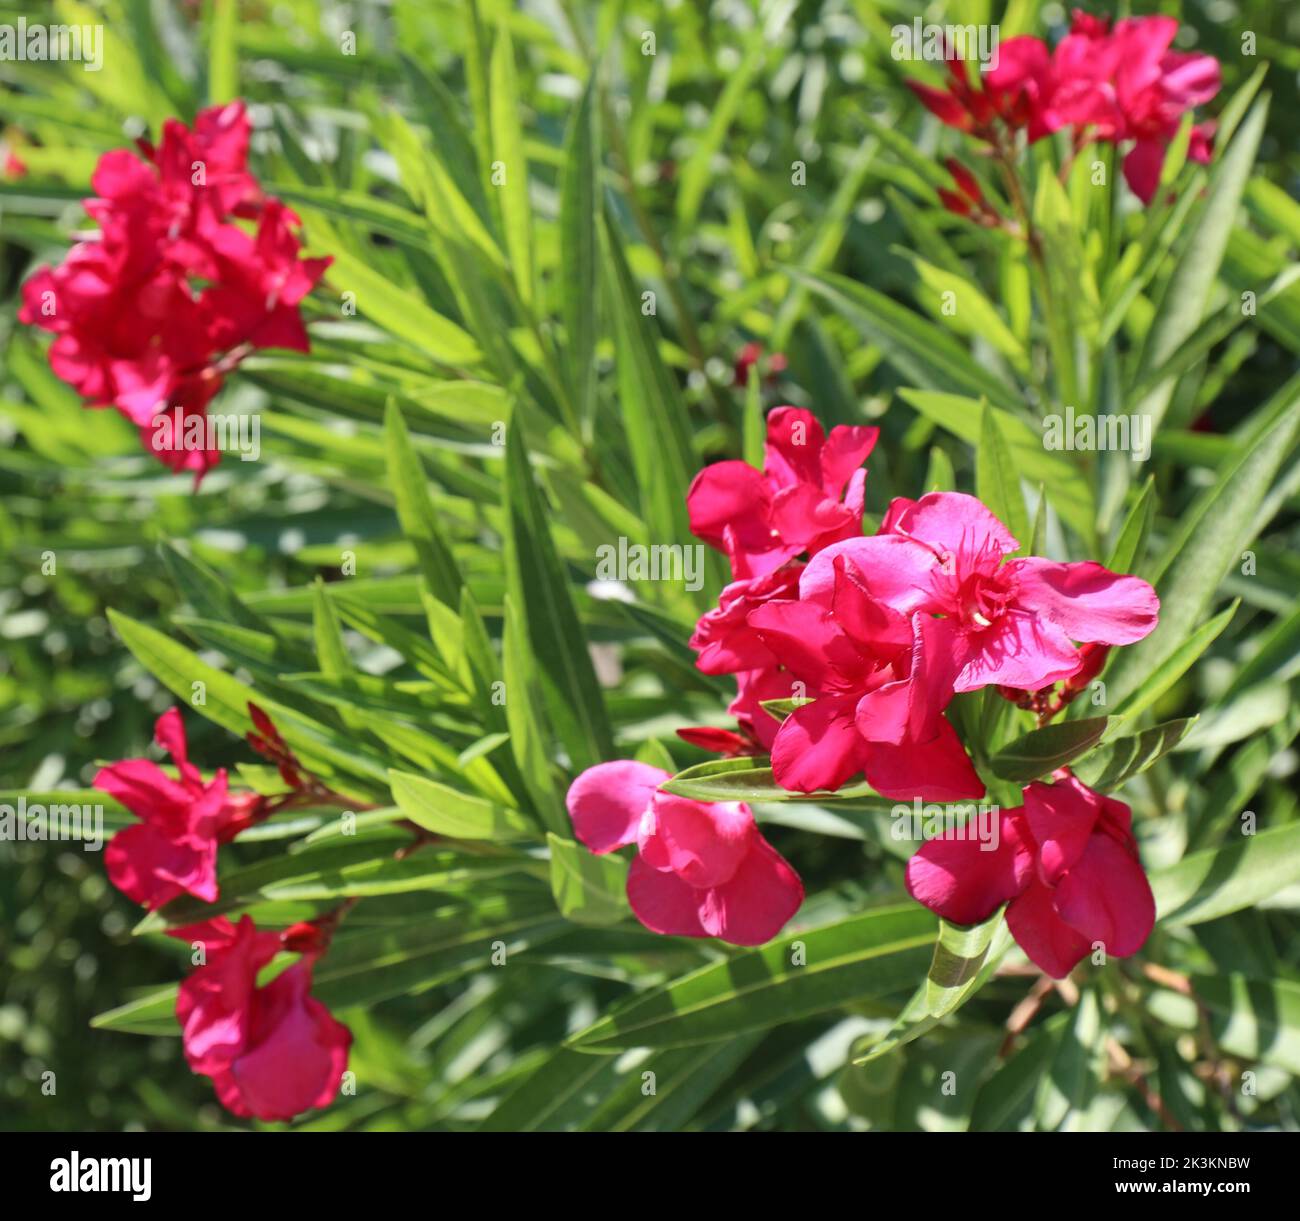 Flores de adelfa La planta de floración típica de la zona mediterránea que florece en verano Foto de stock